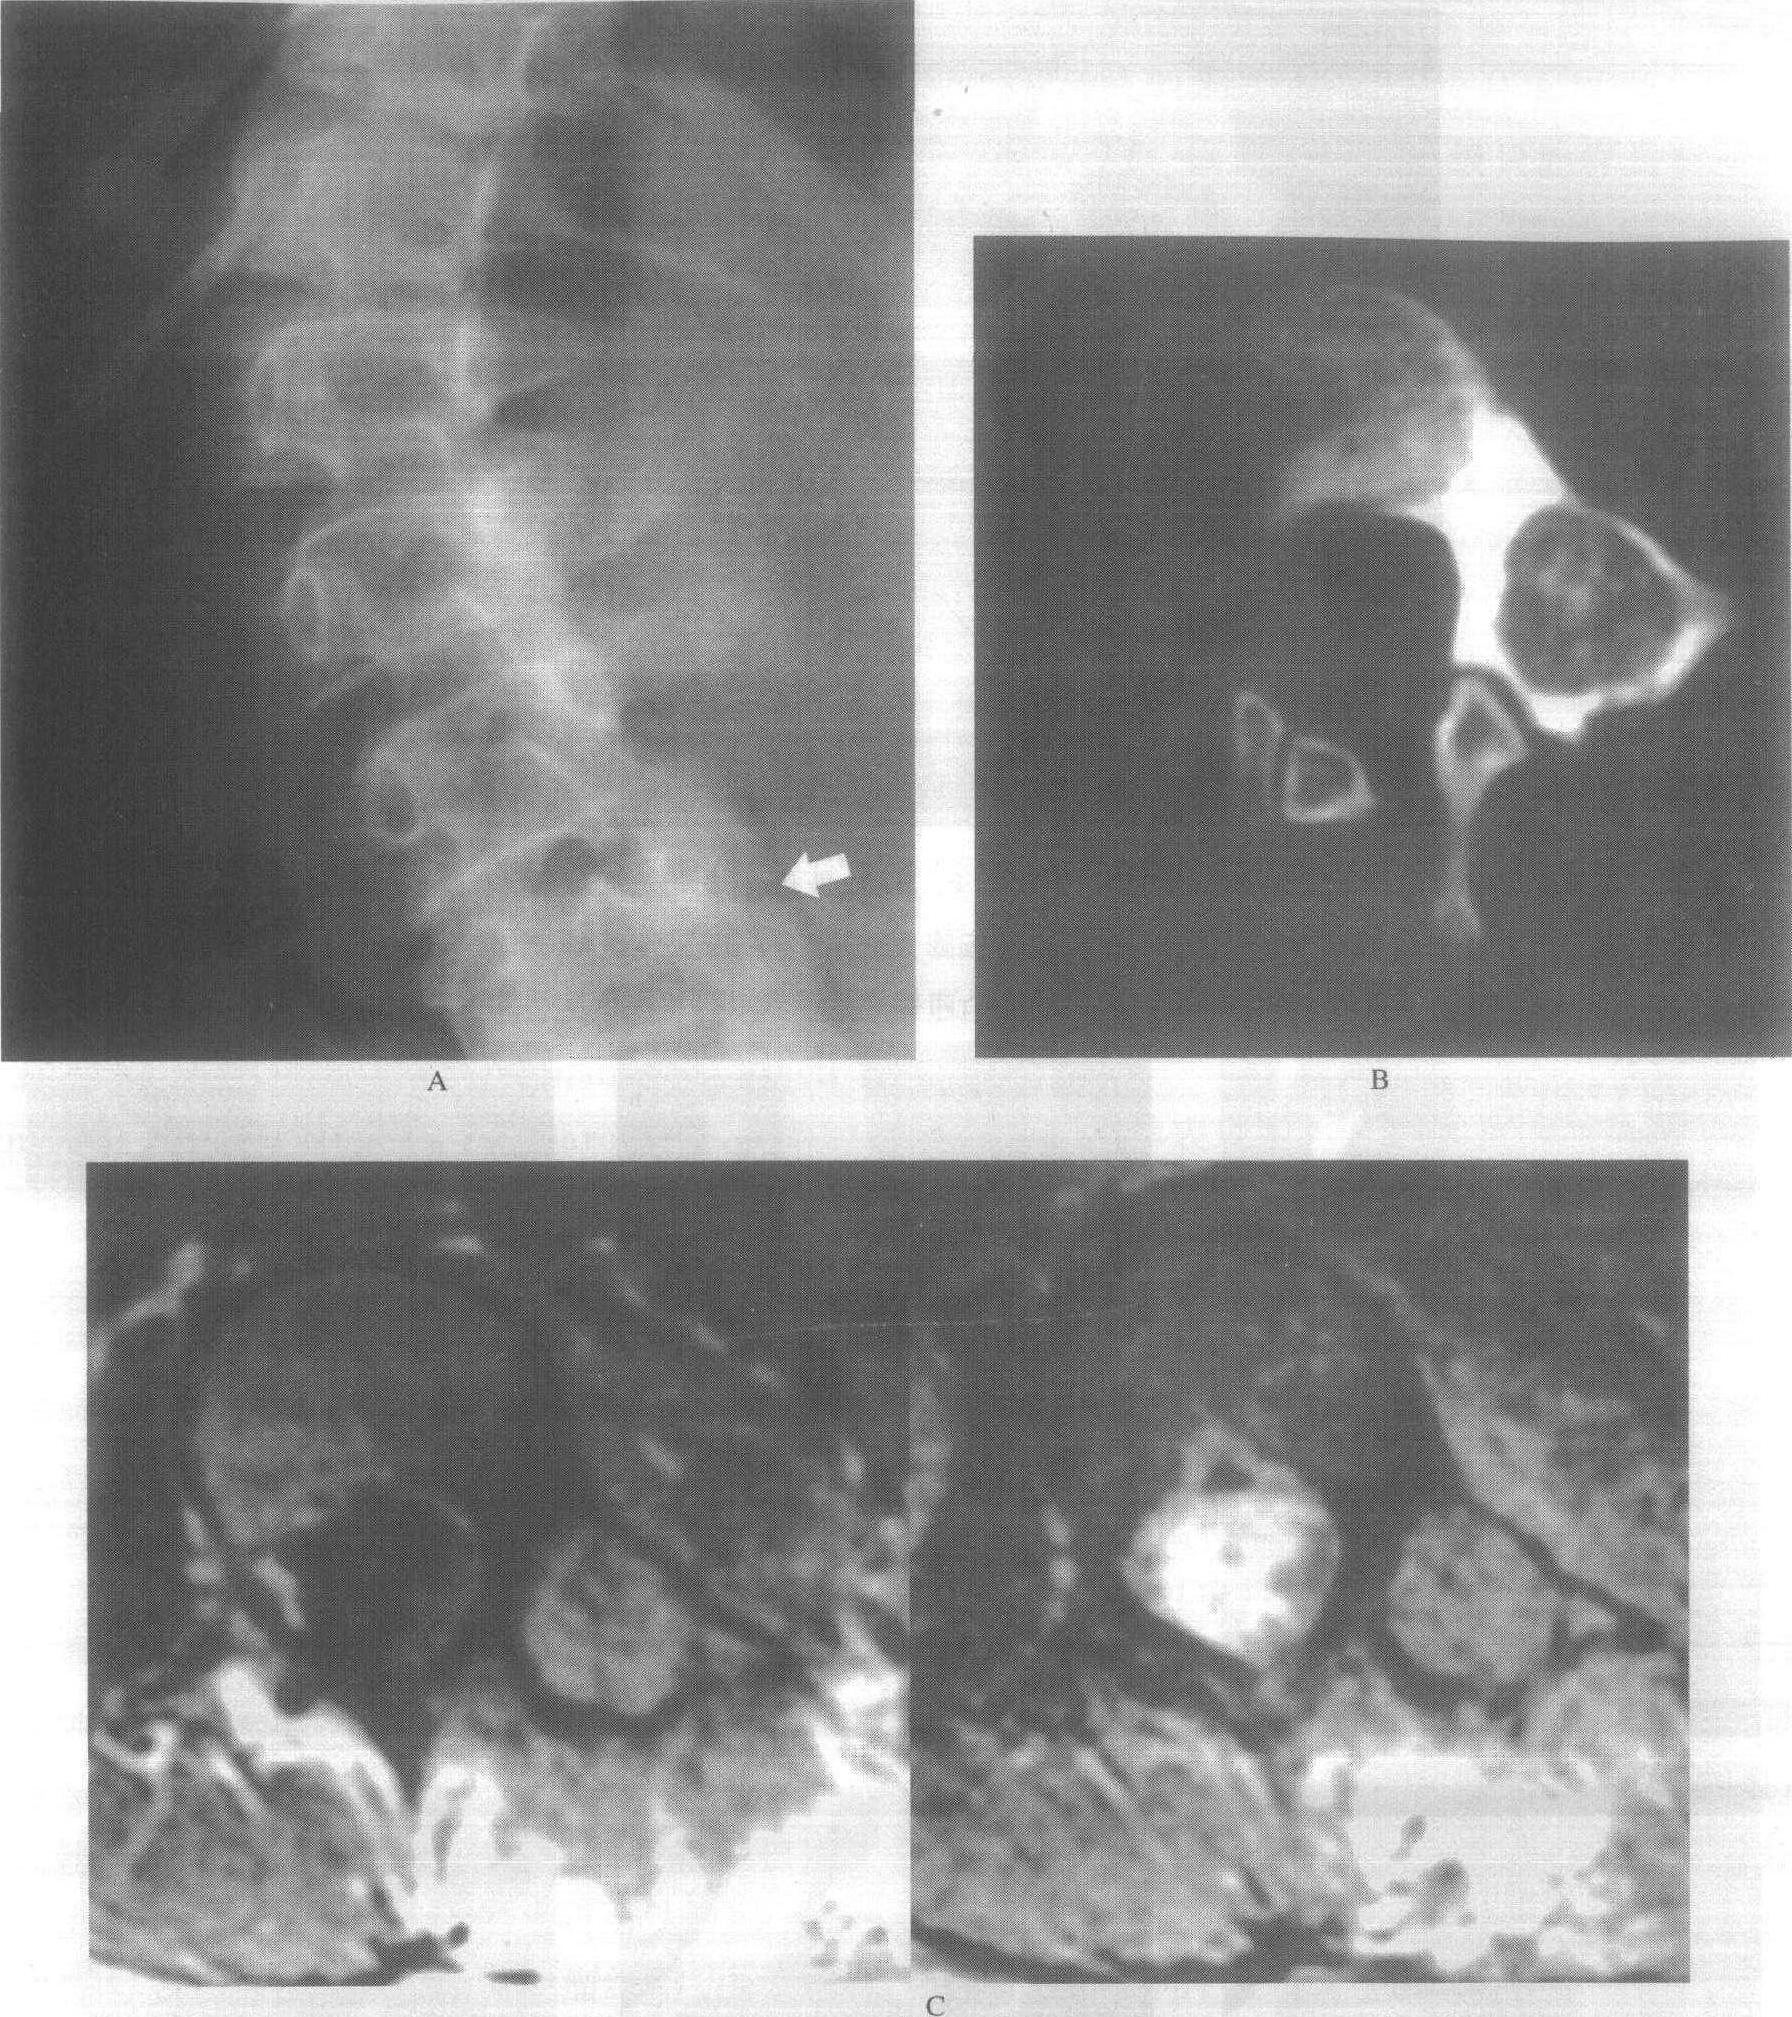 磁共振（MRI）四肢长骨、腿部扫描技术_序列